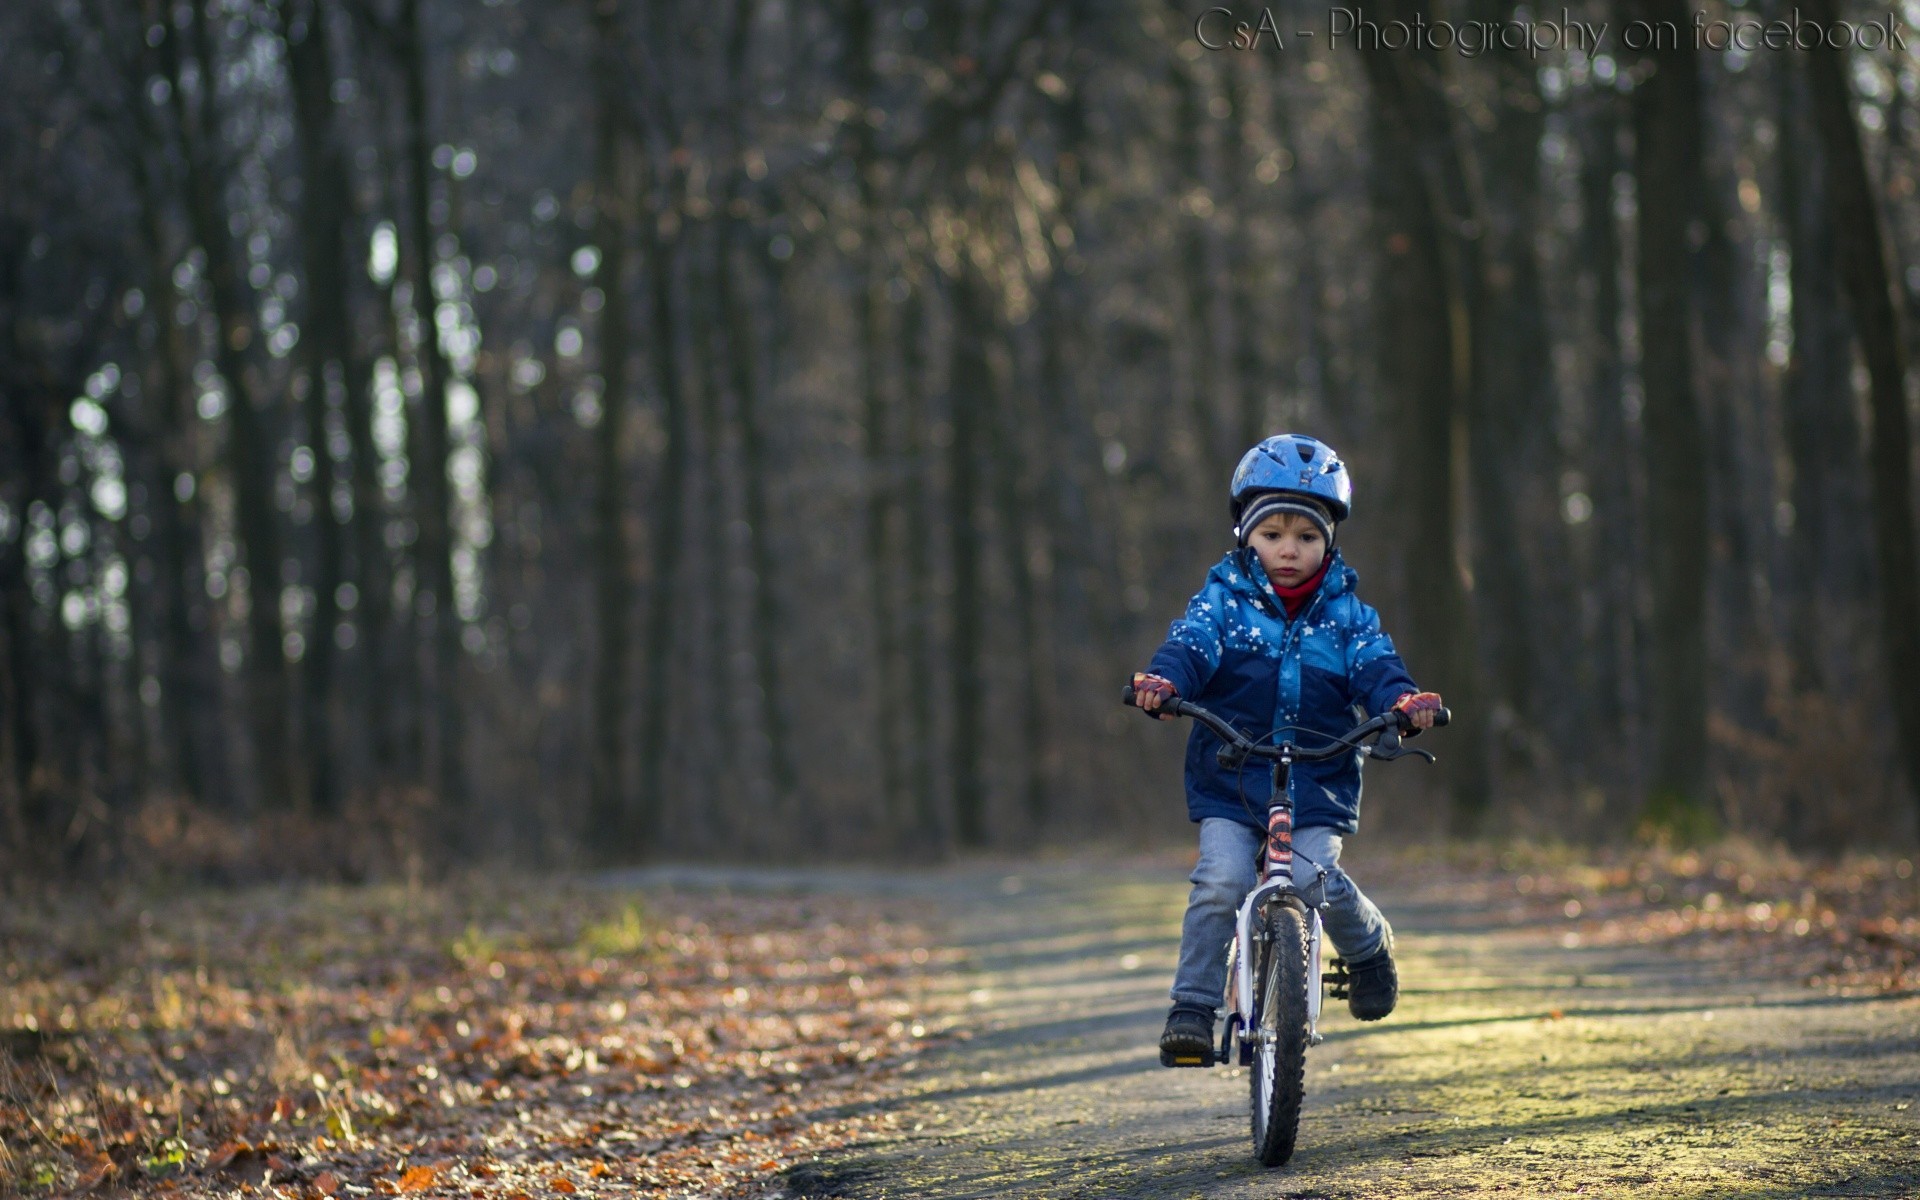 велоспорт колеса велосипедист сидит велосипед ребенок отдых дорога удовольствие парк отдых древесины один на открытом воздухе байкер дерево движения природа мальчик приключения